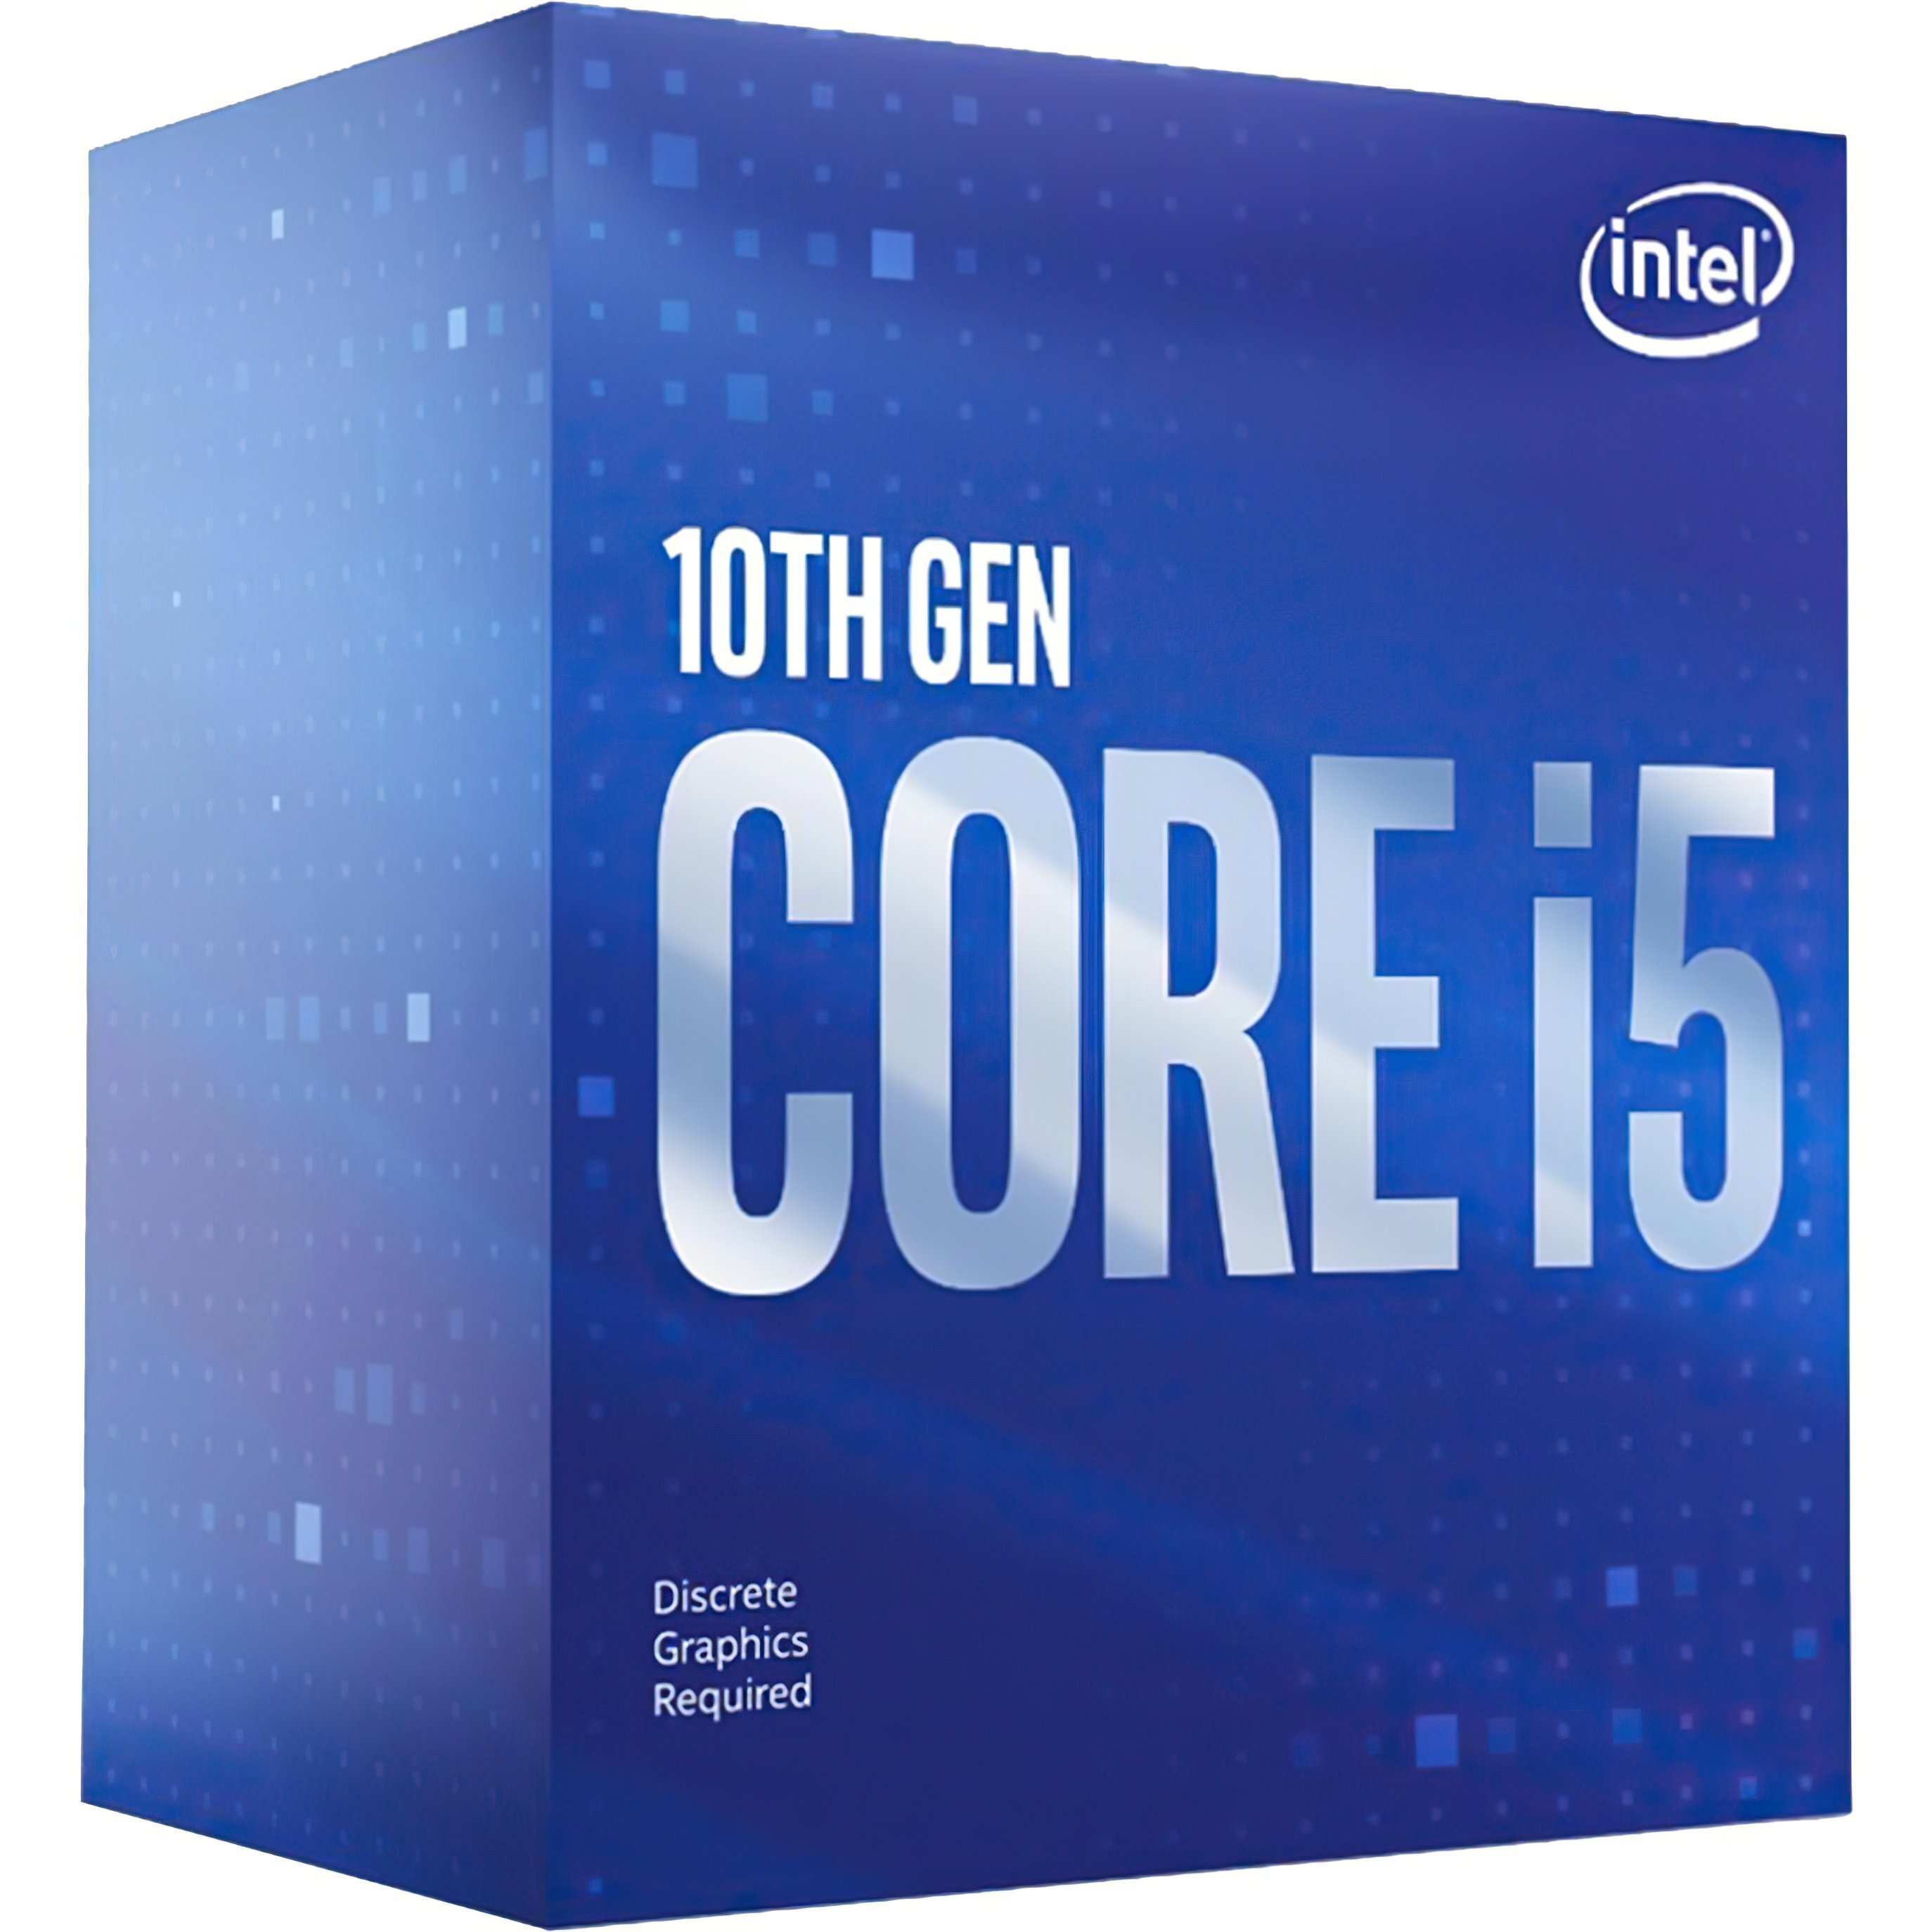 Процессор Intel Core i5-10400 6/12 2.9GHz 12M LGA1200 65W box (BX8070110400) фото 1